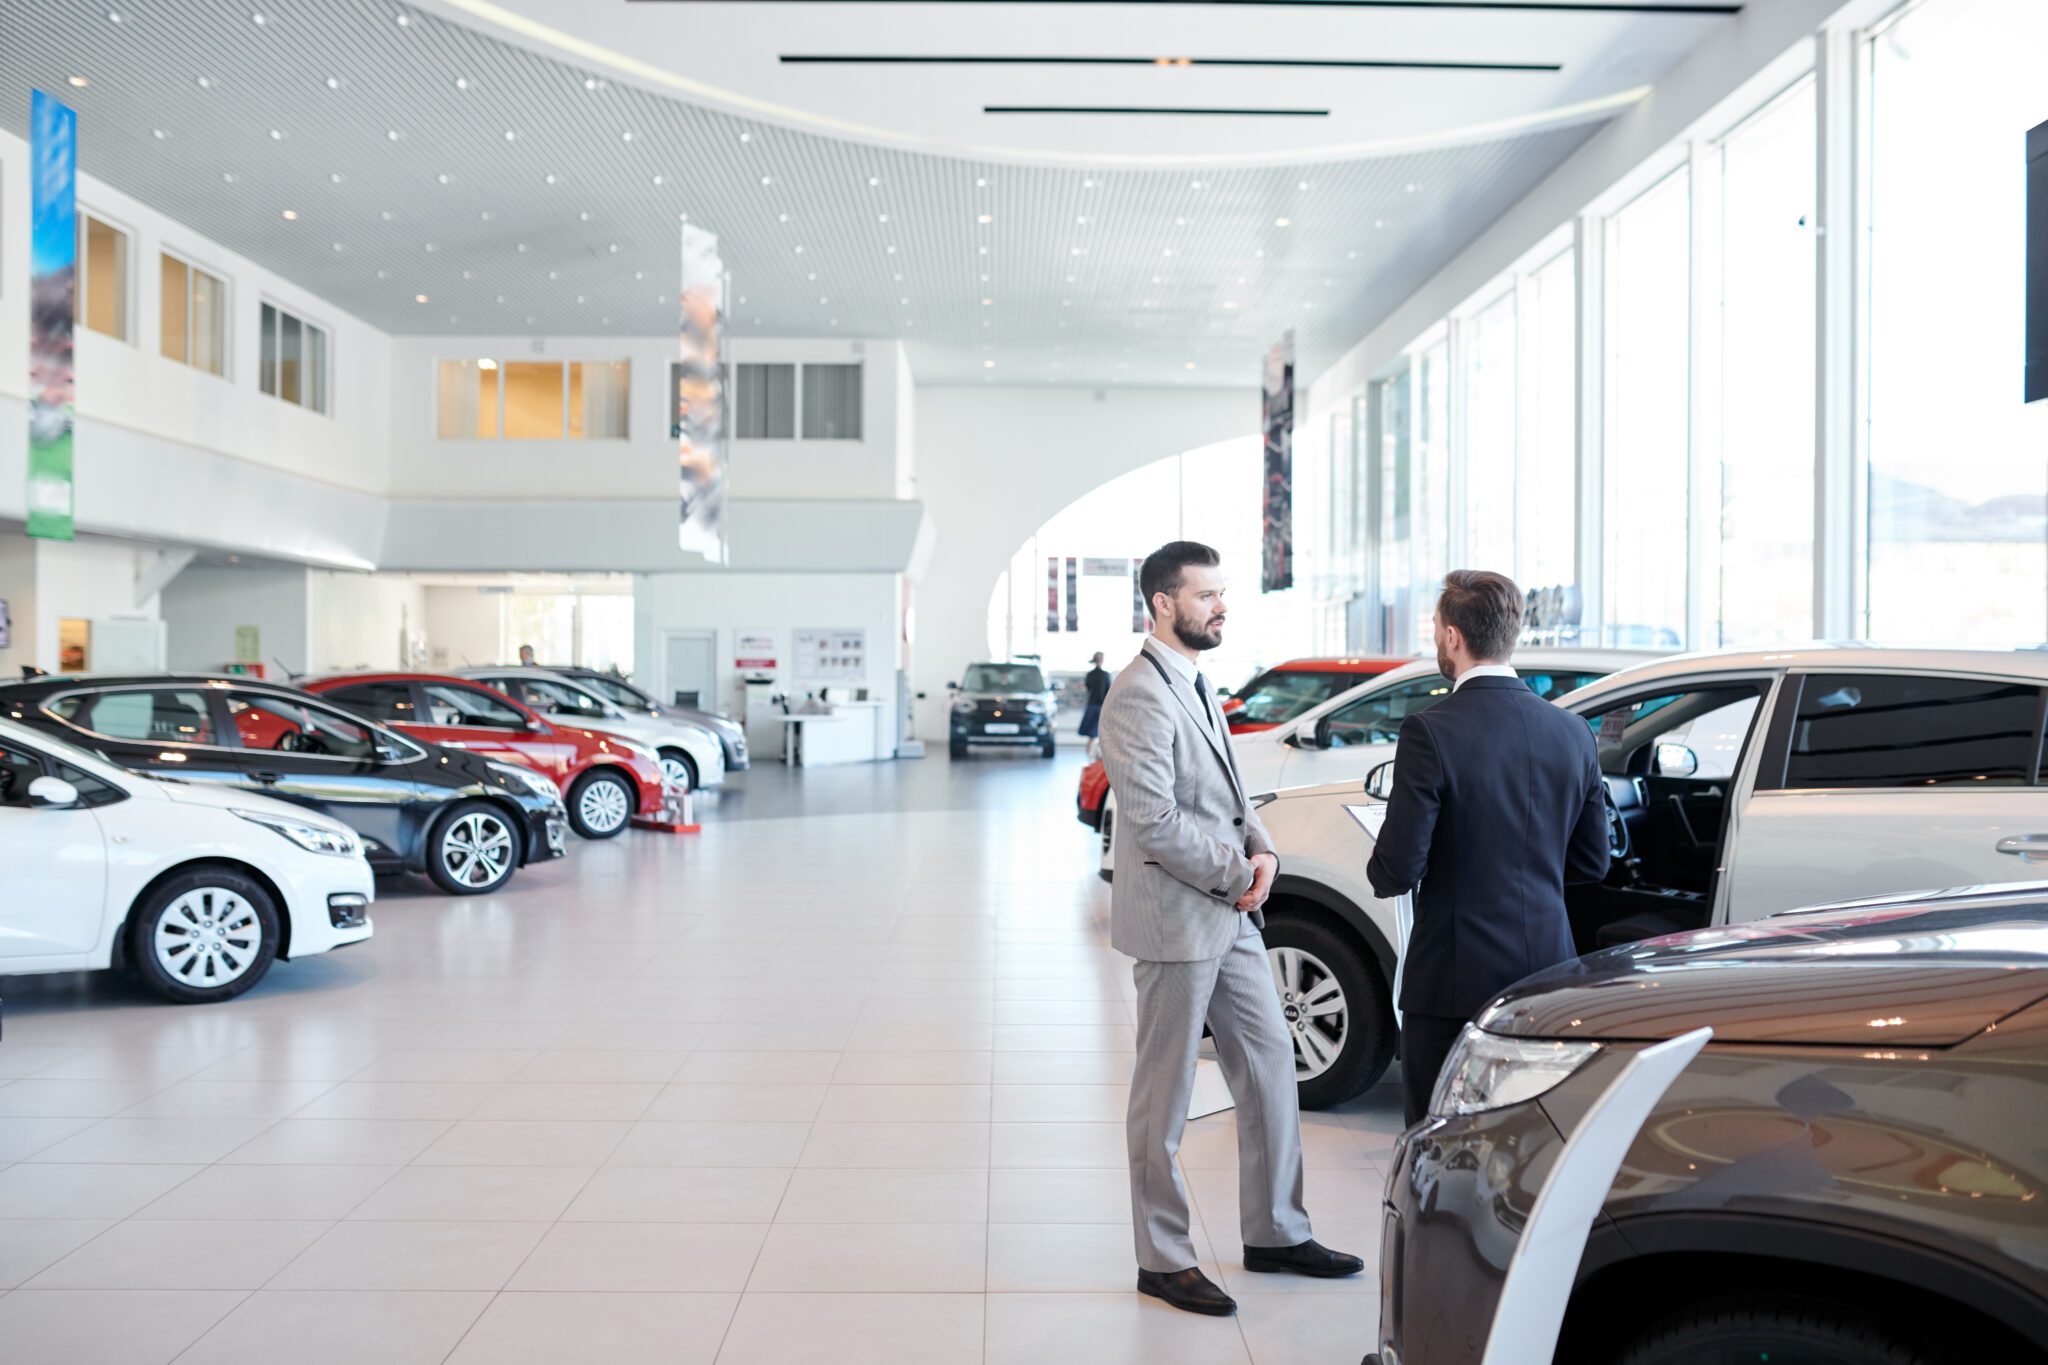 Two salesmen talking in a modern car showroom.